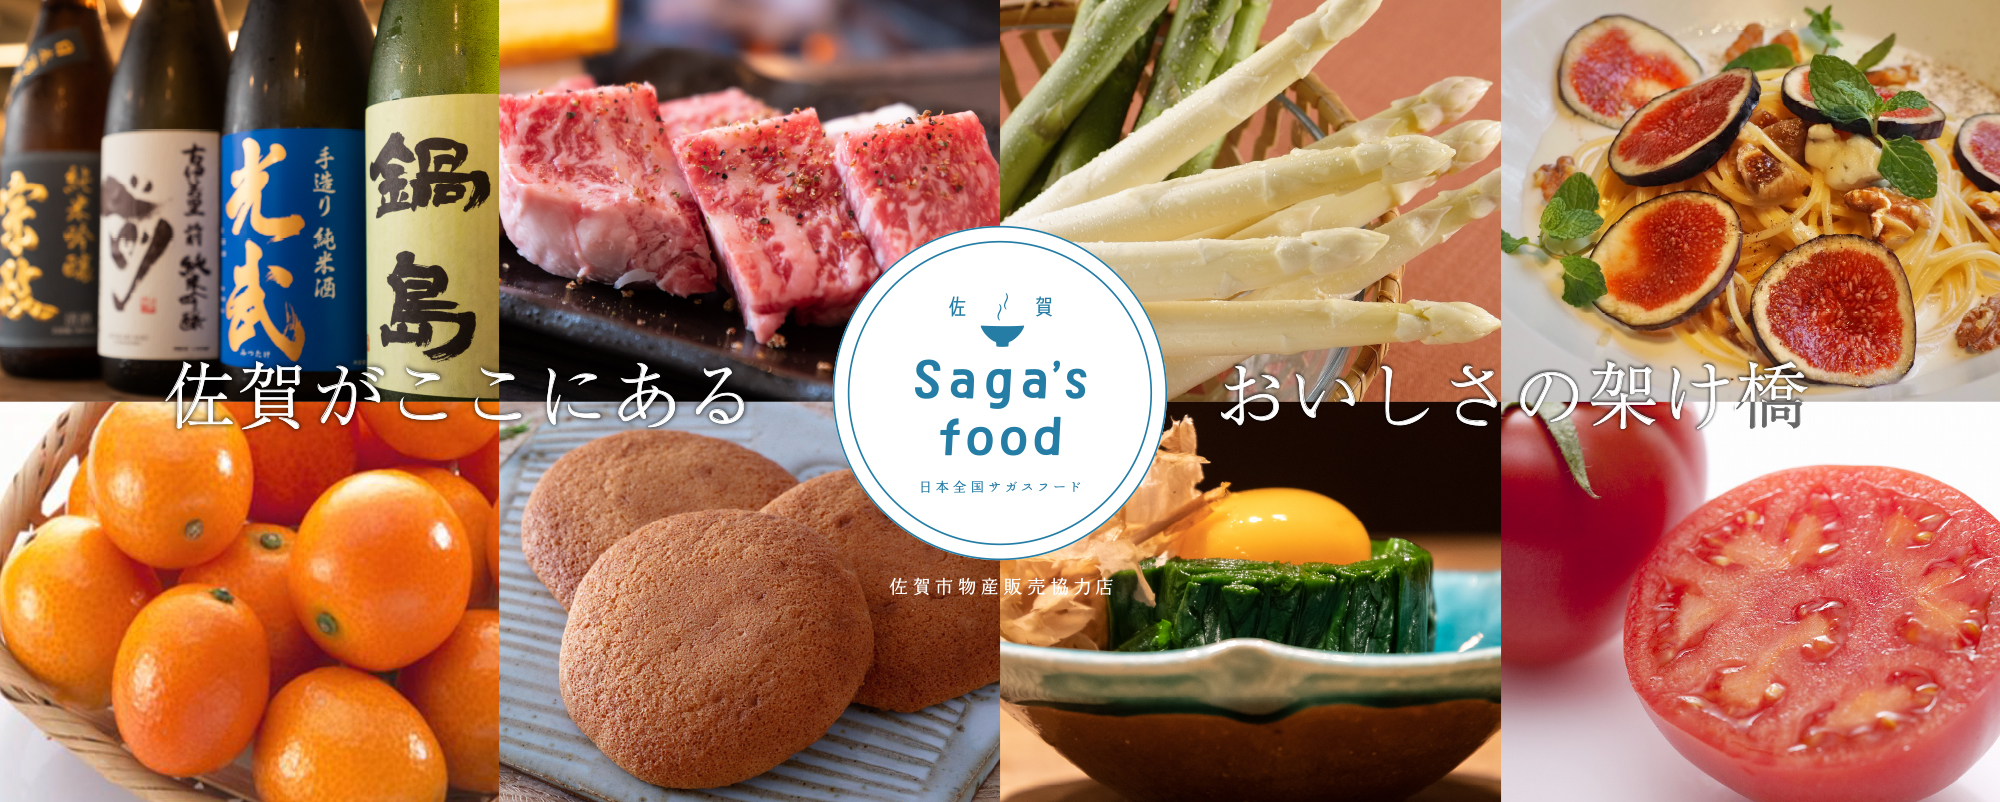 Saga's food